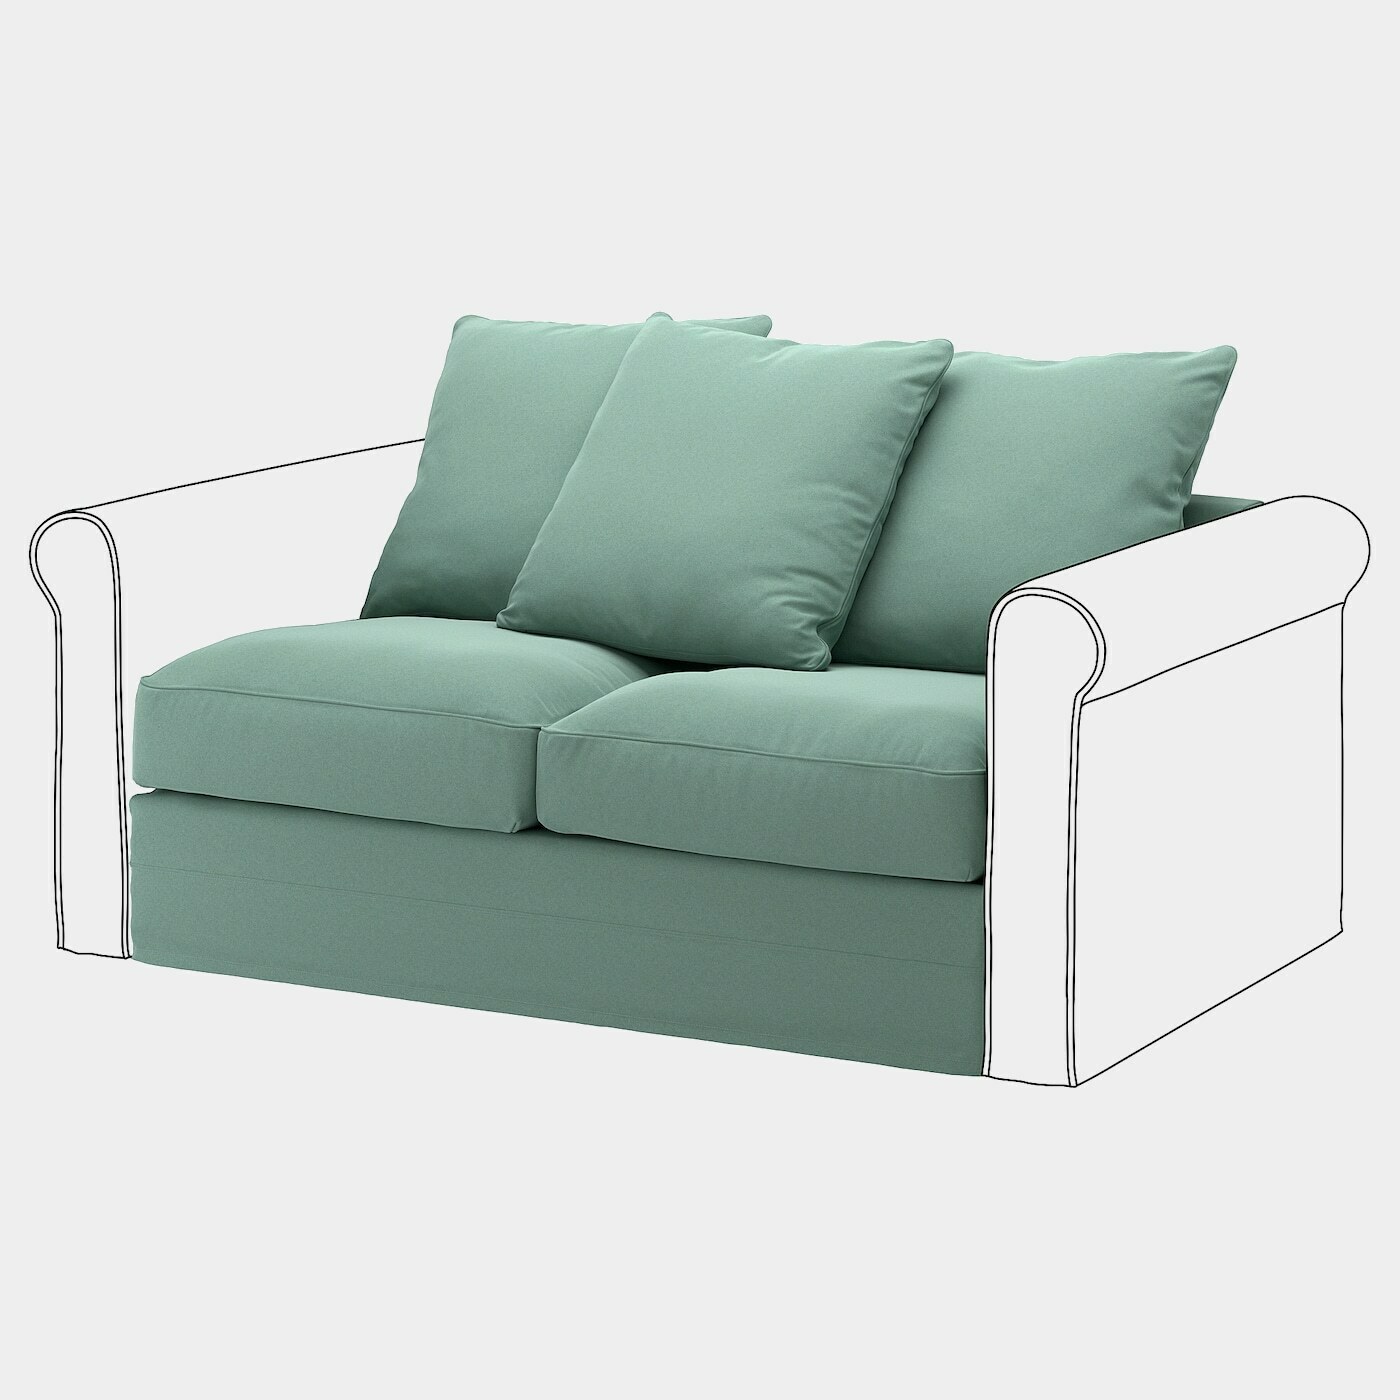 GRÖNLID Sitzelement 2  -  - Möbel Ideen für dein Zuhause von Home Trends. Möbel Trends von Social Media Influencer für dein Skandi Zuhause.